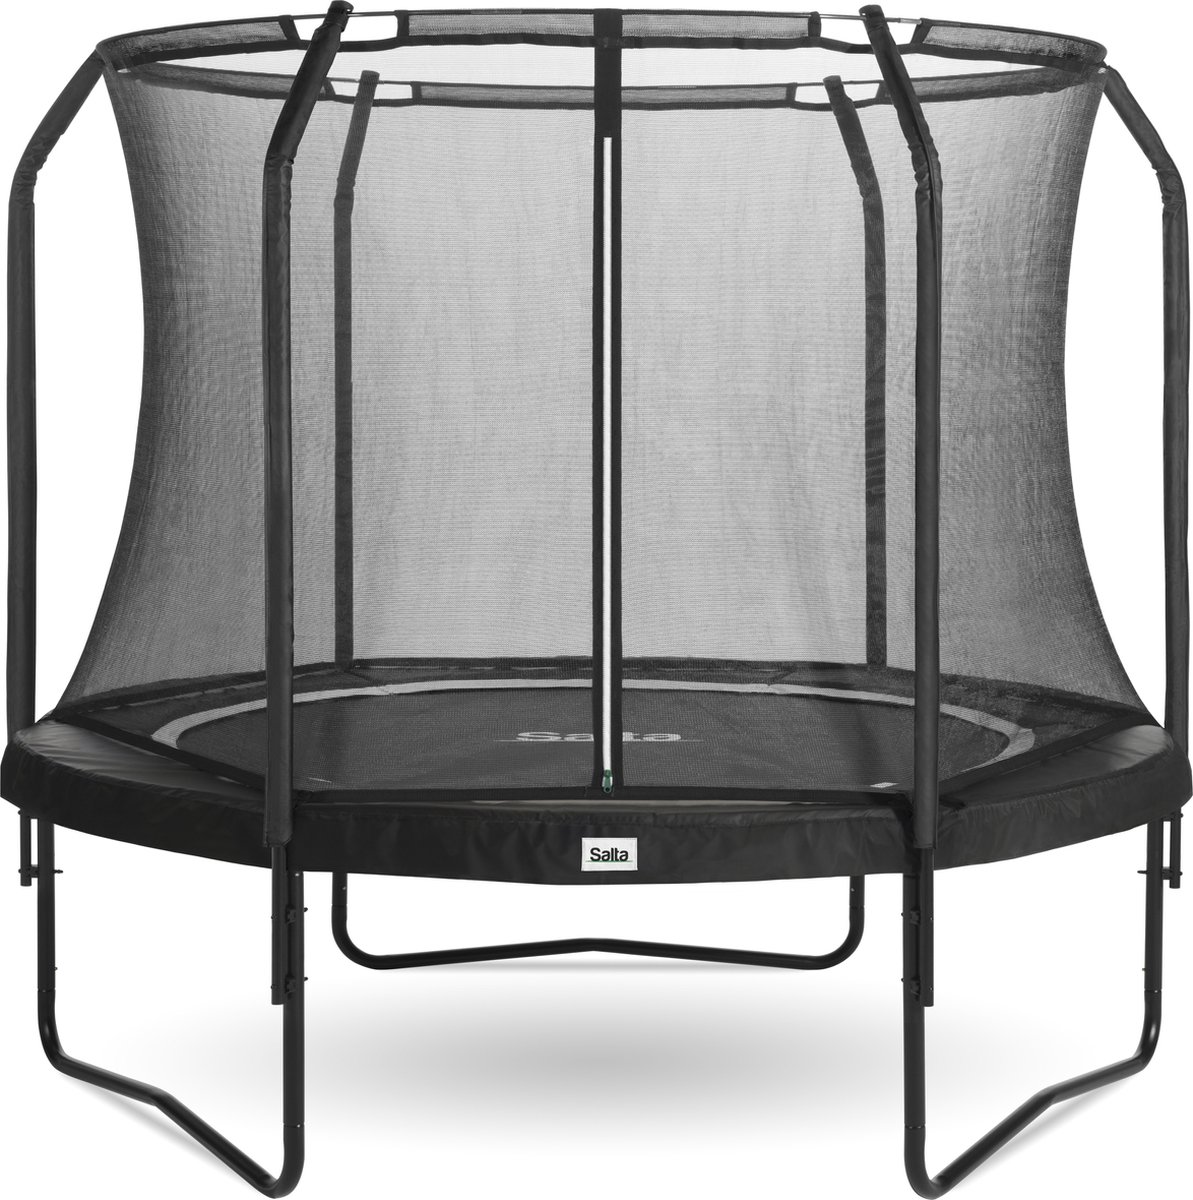 Salta Premium trampoline